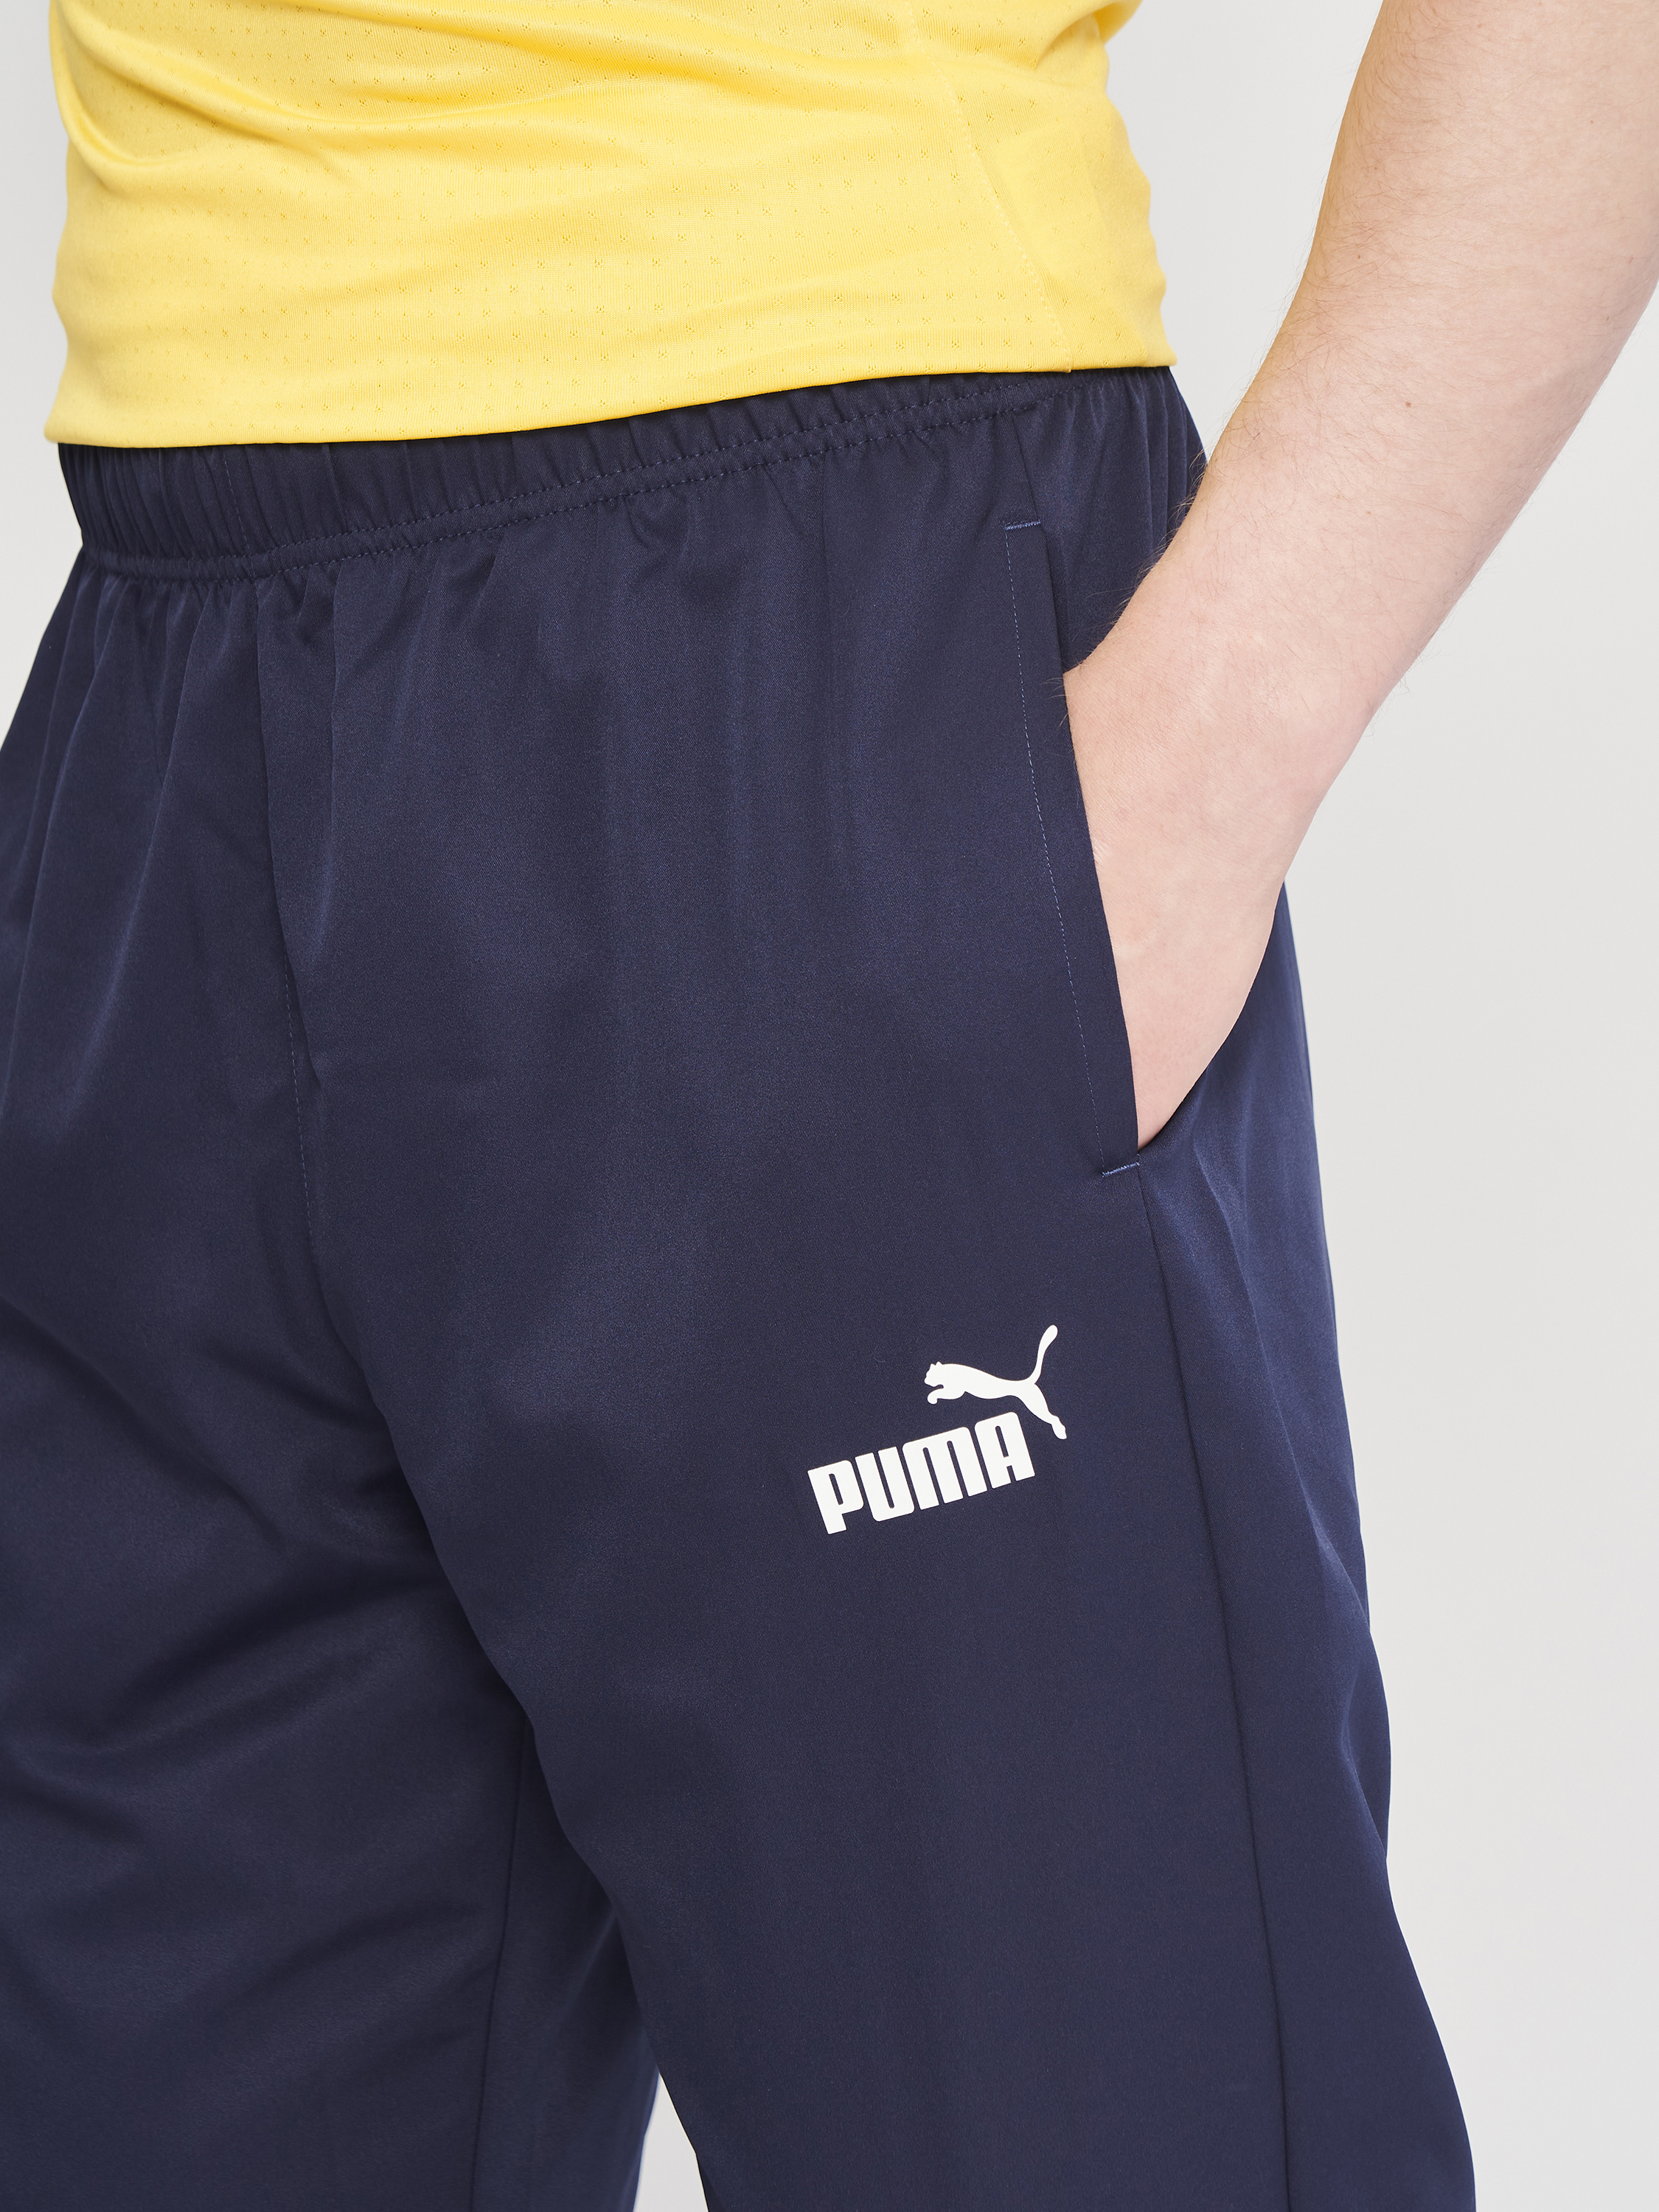 Calça Puma Active Woven Pants Op Masculino Peacoat 58673206,58673206